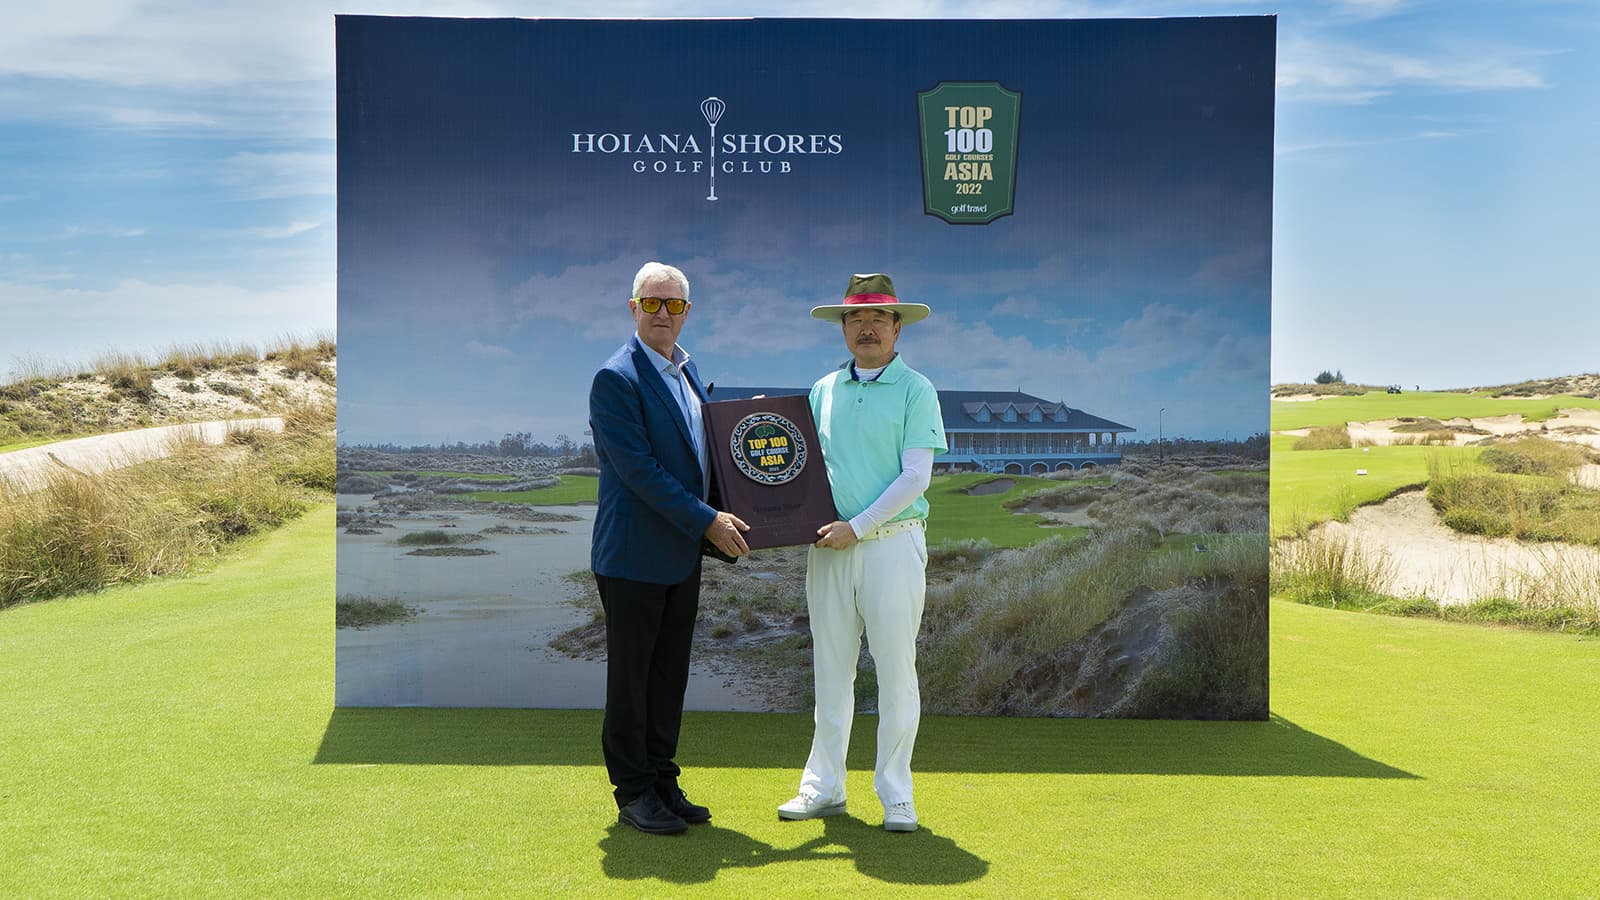 Hoiana Shores Golf Club lọt vào danh sách top 100 sân golf hàng đầu châu Á